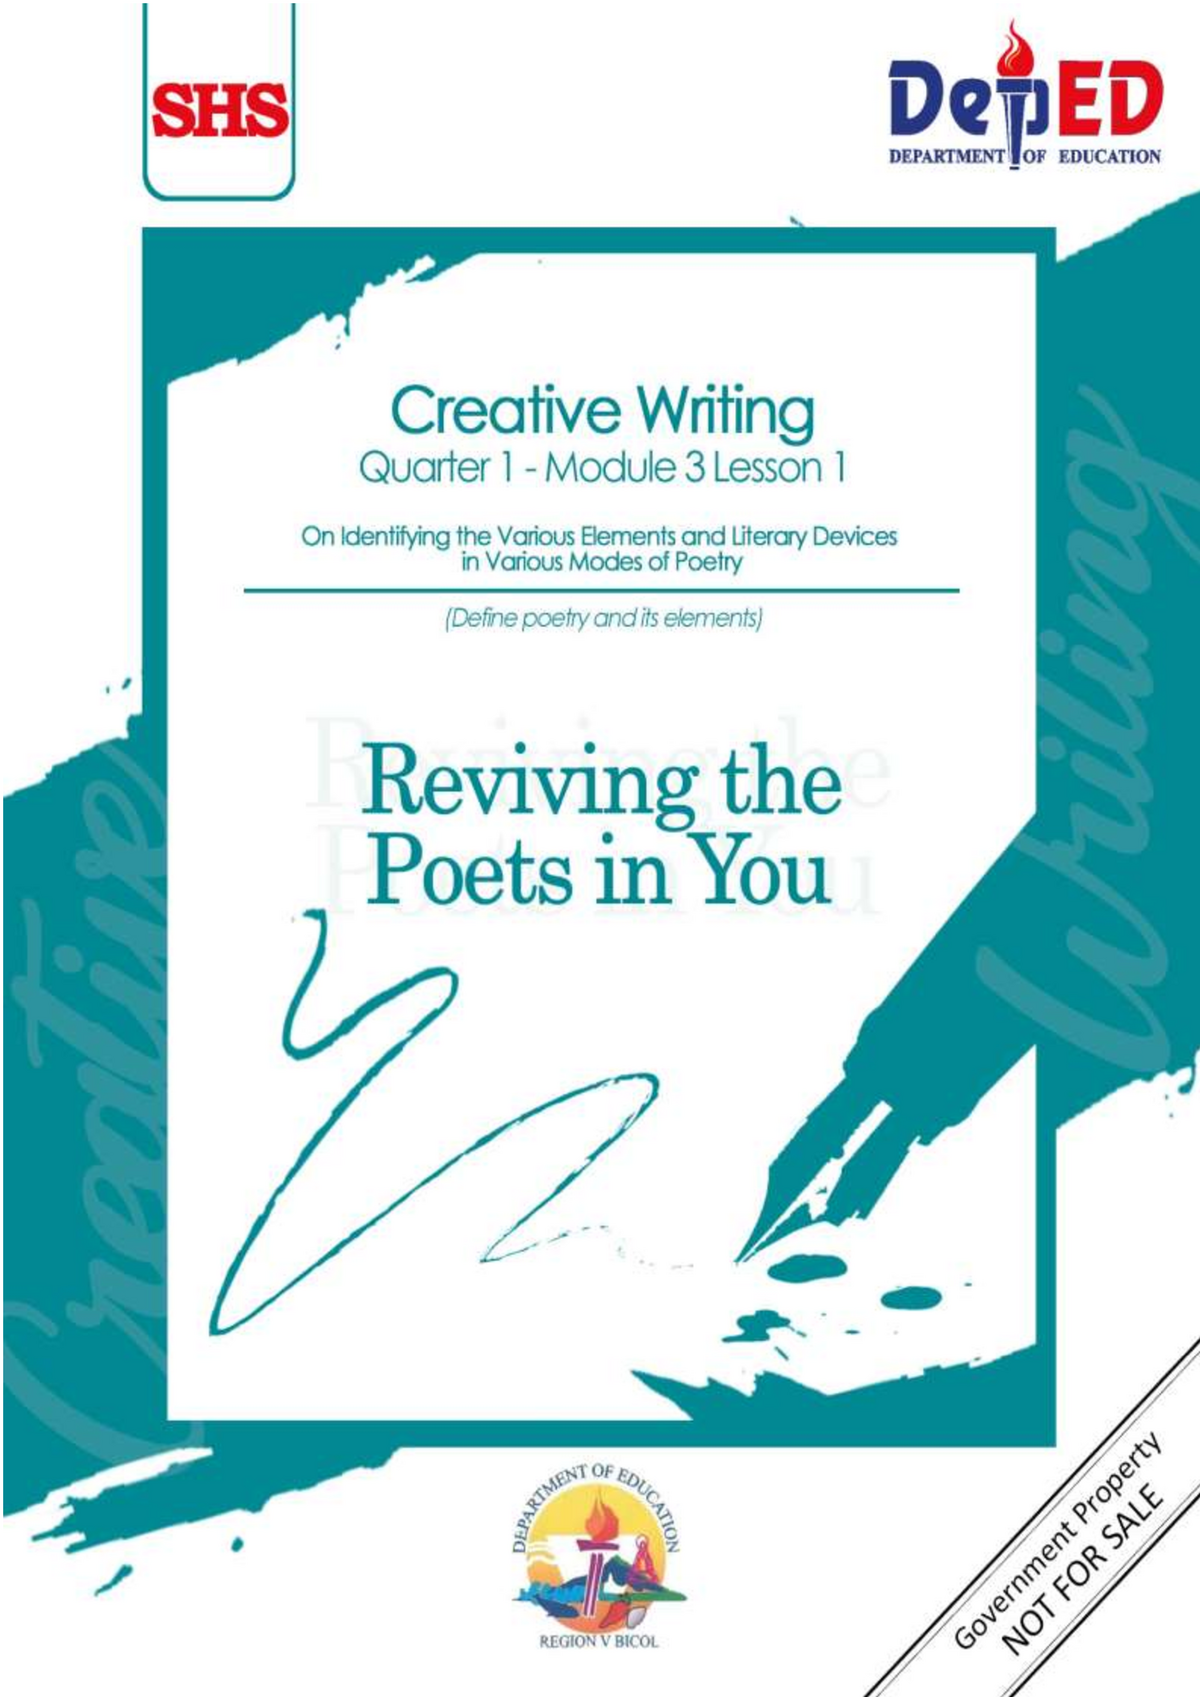 module in creative writing